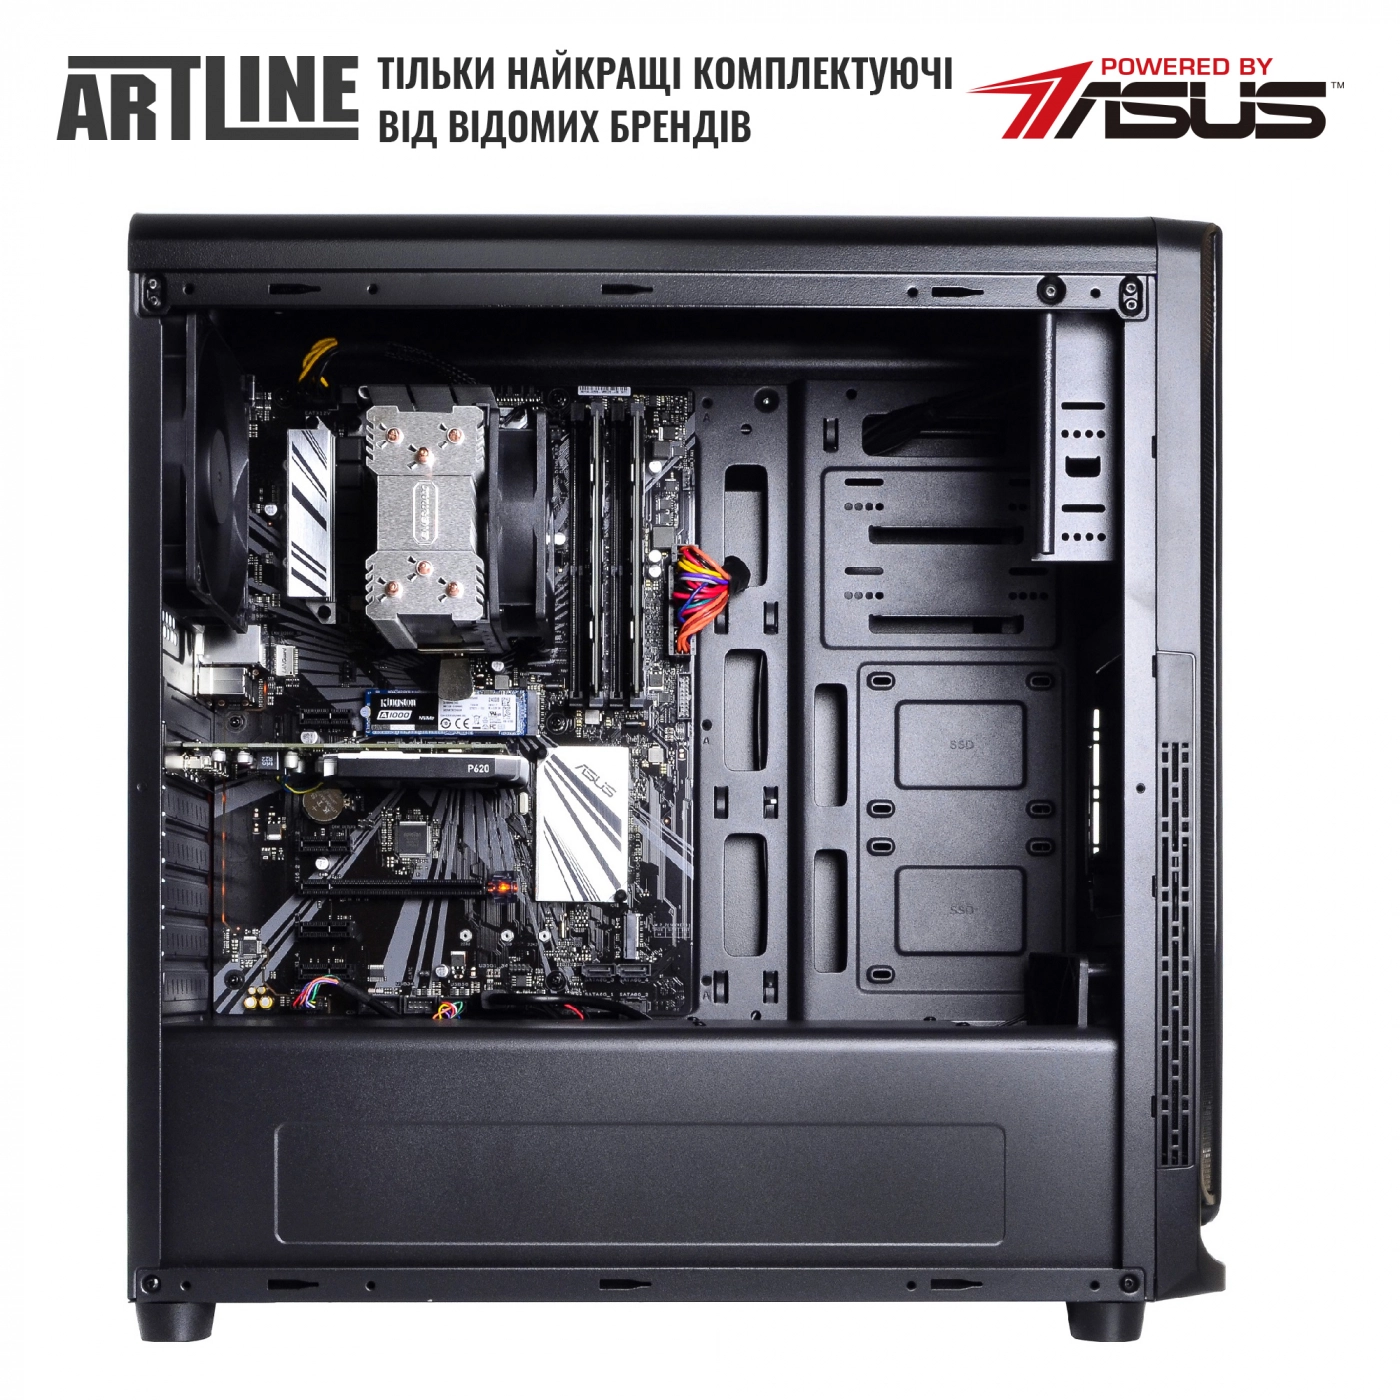 Купить Сервер ARTLINE Business T13v14 - фото 5